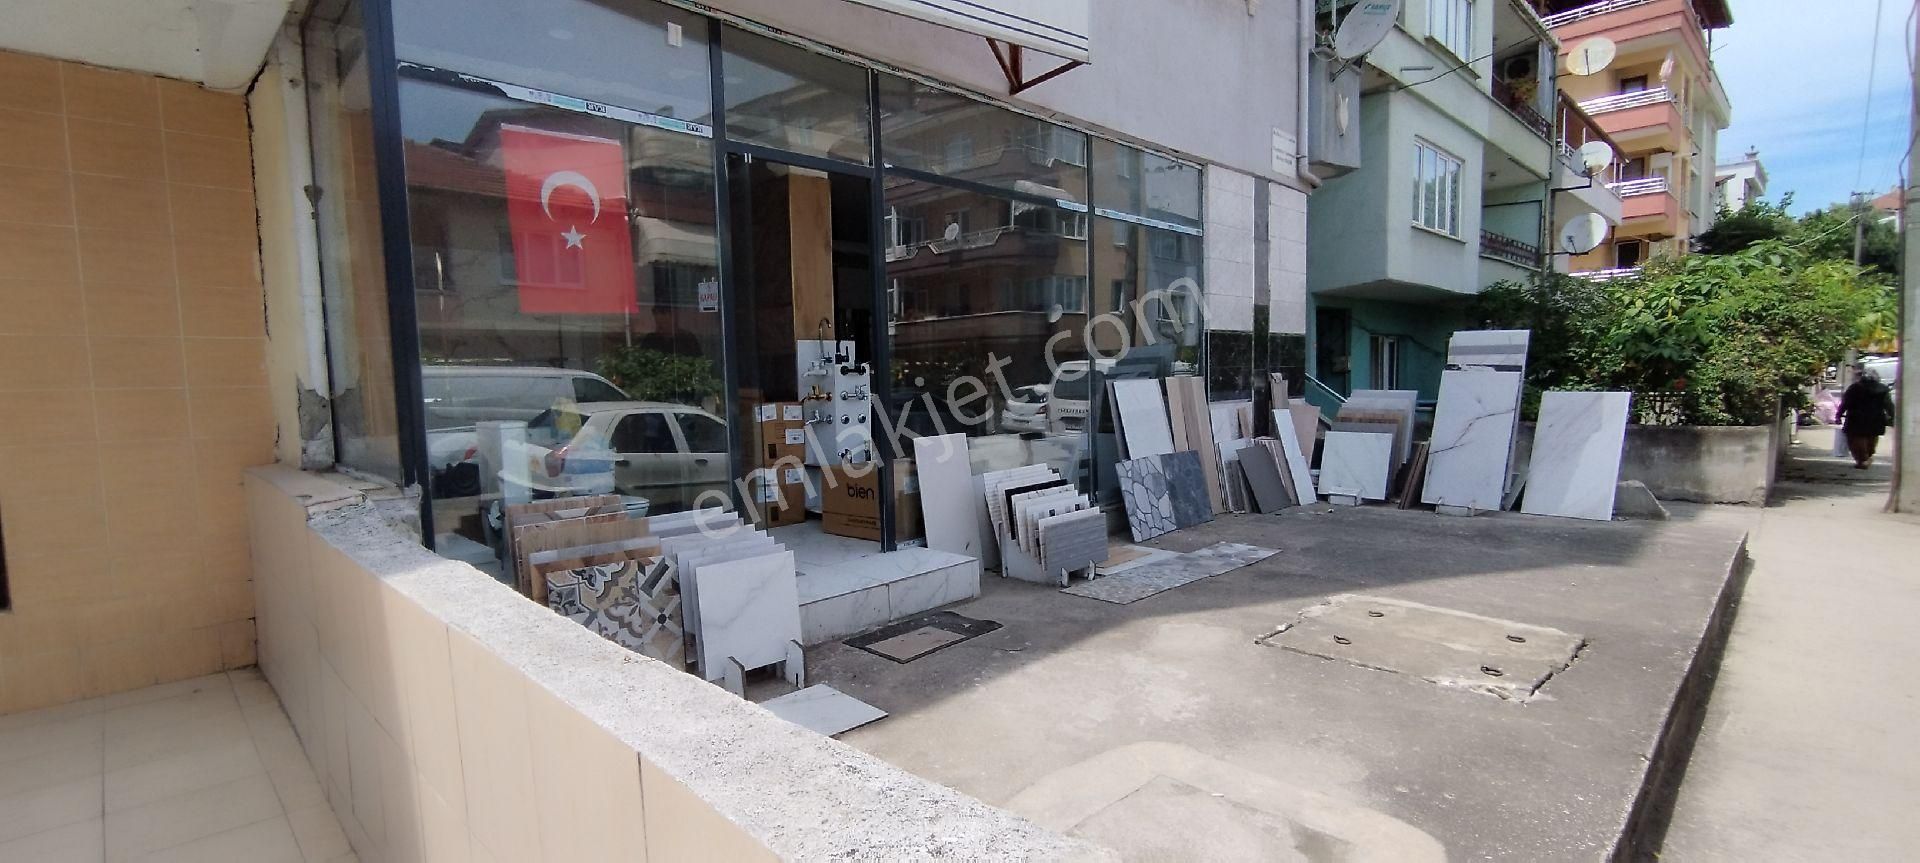 Yalova Merkez Gazi Osman Paşa Satılık Dükkan & Mağaza Gaziosmanpaşa Mahallesinde Fırsat dükkan